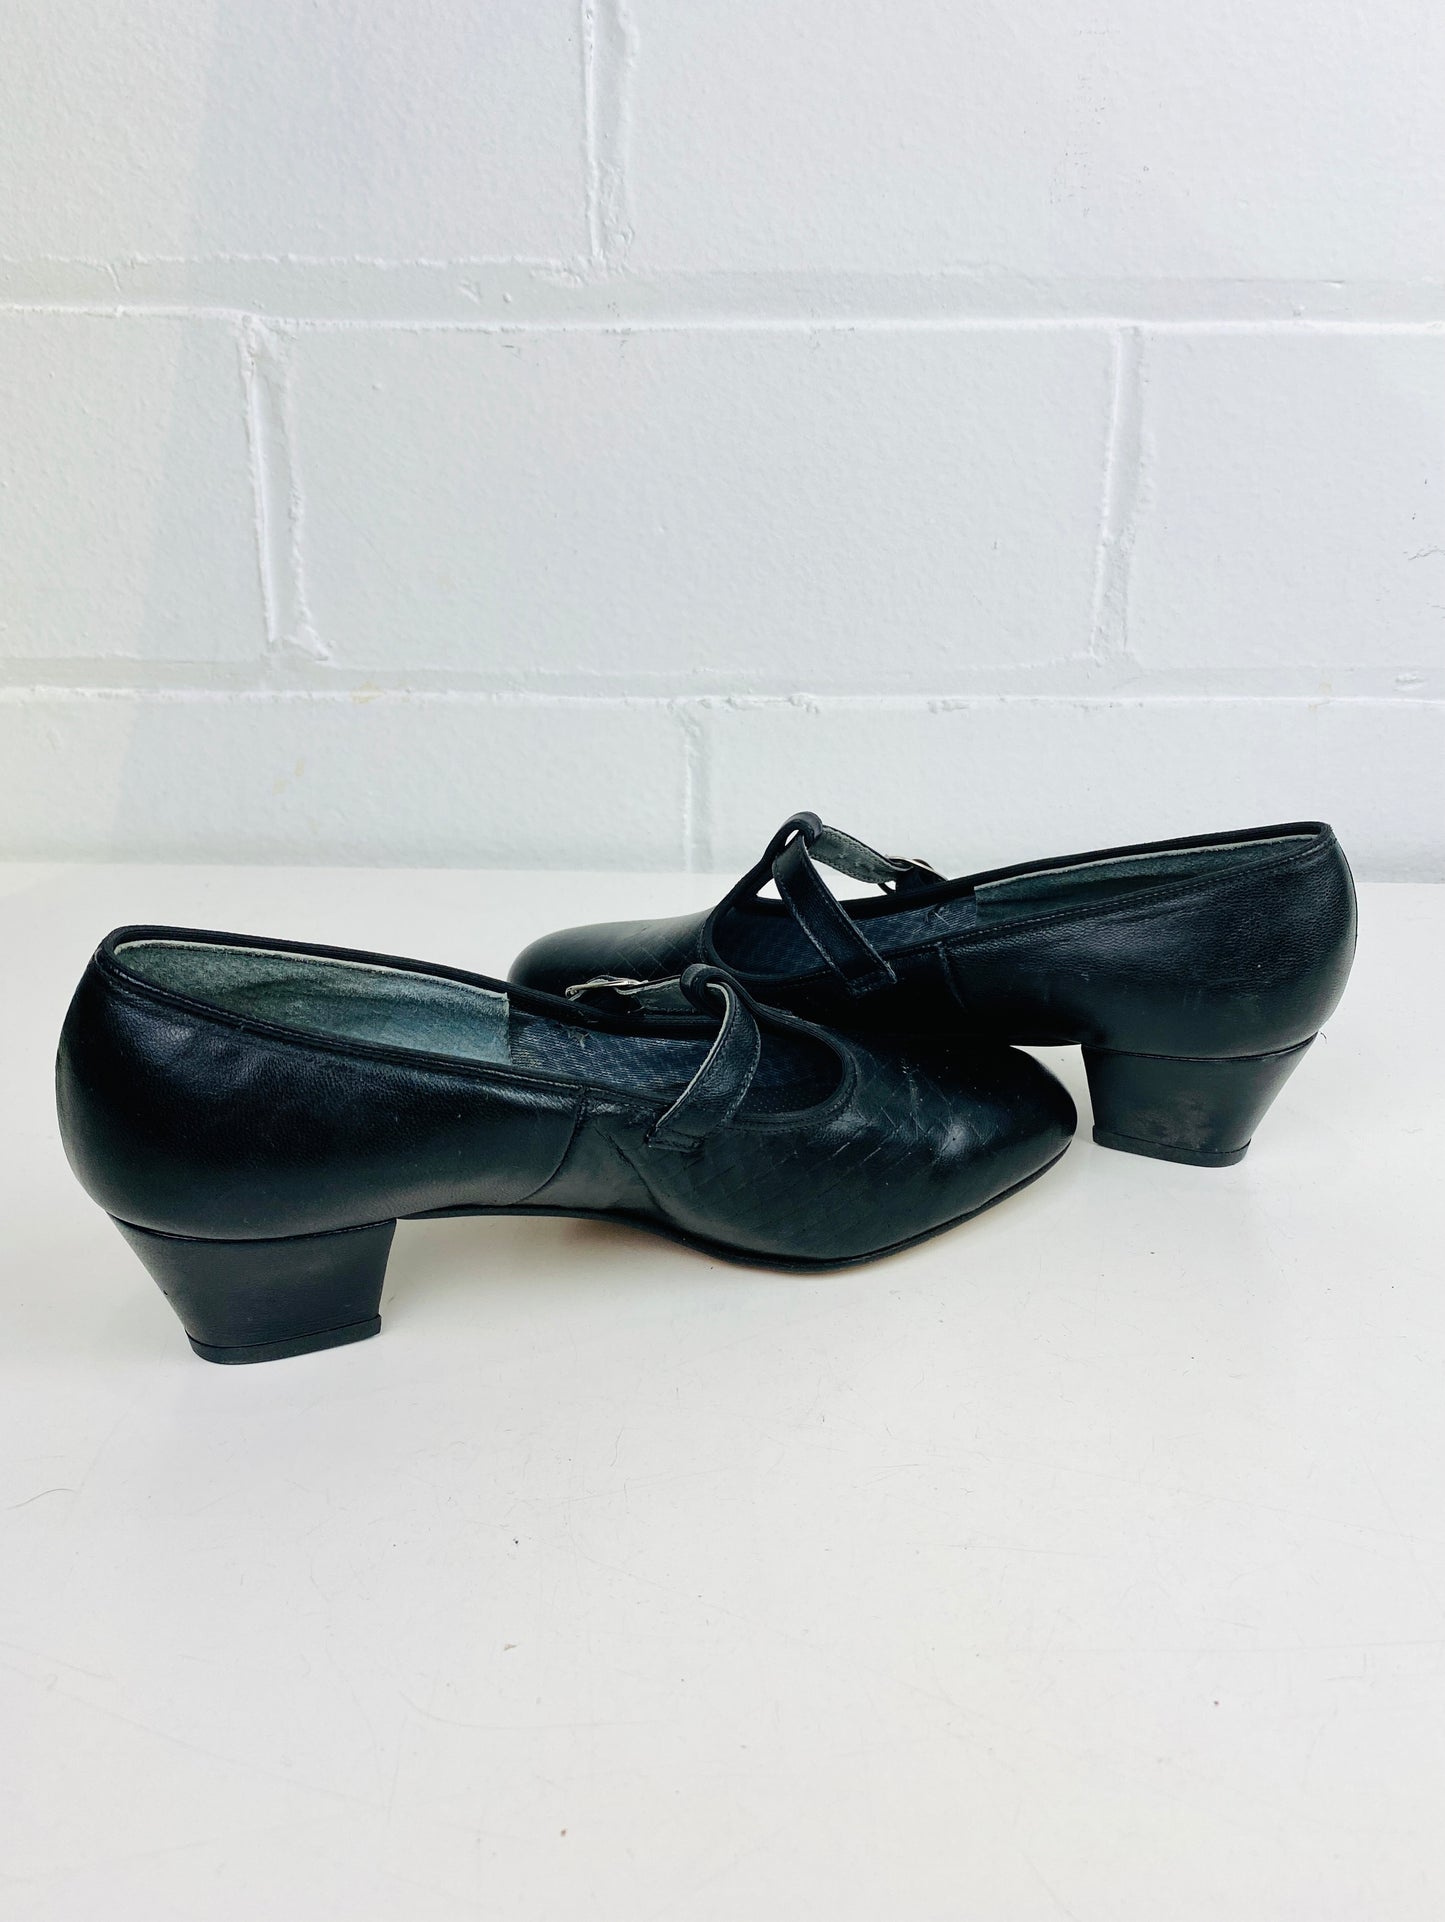 Vintage Deadstock Shoes, Women's 1980s Black Leather Cuban Heel T-Strap Pump's, NOS